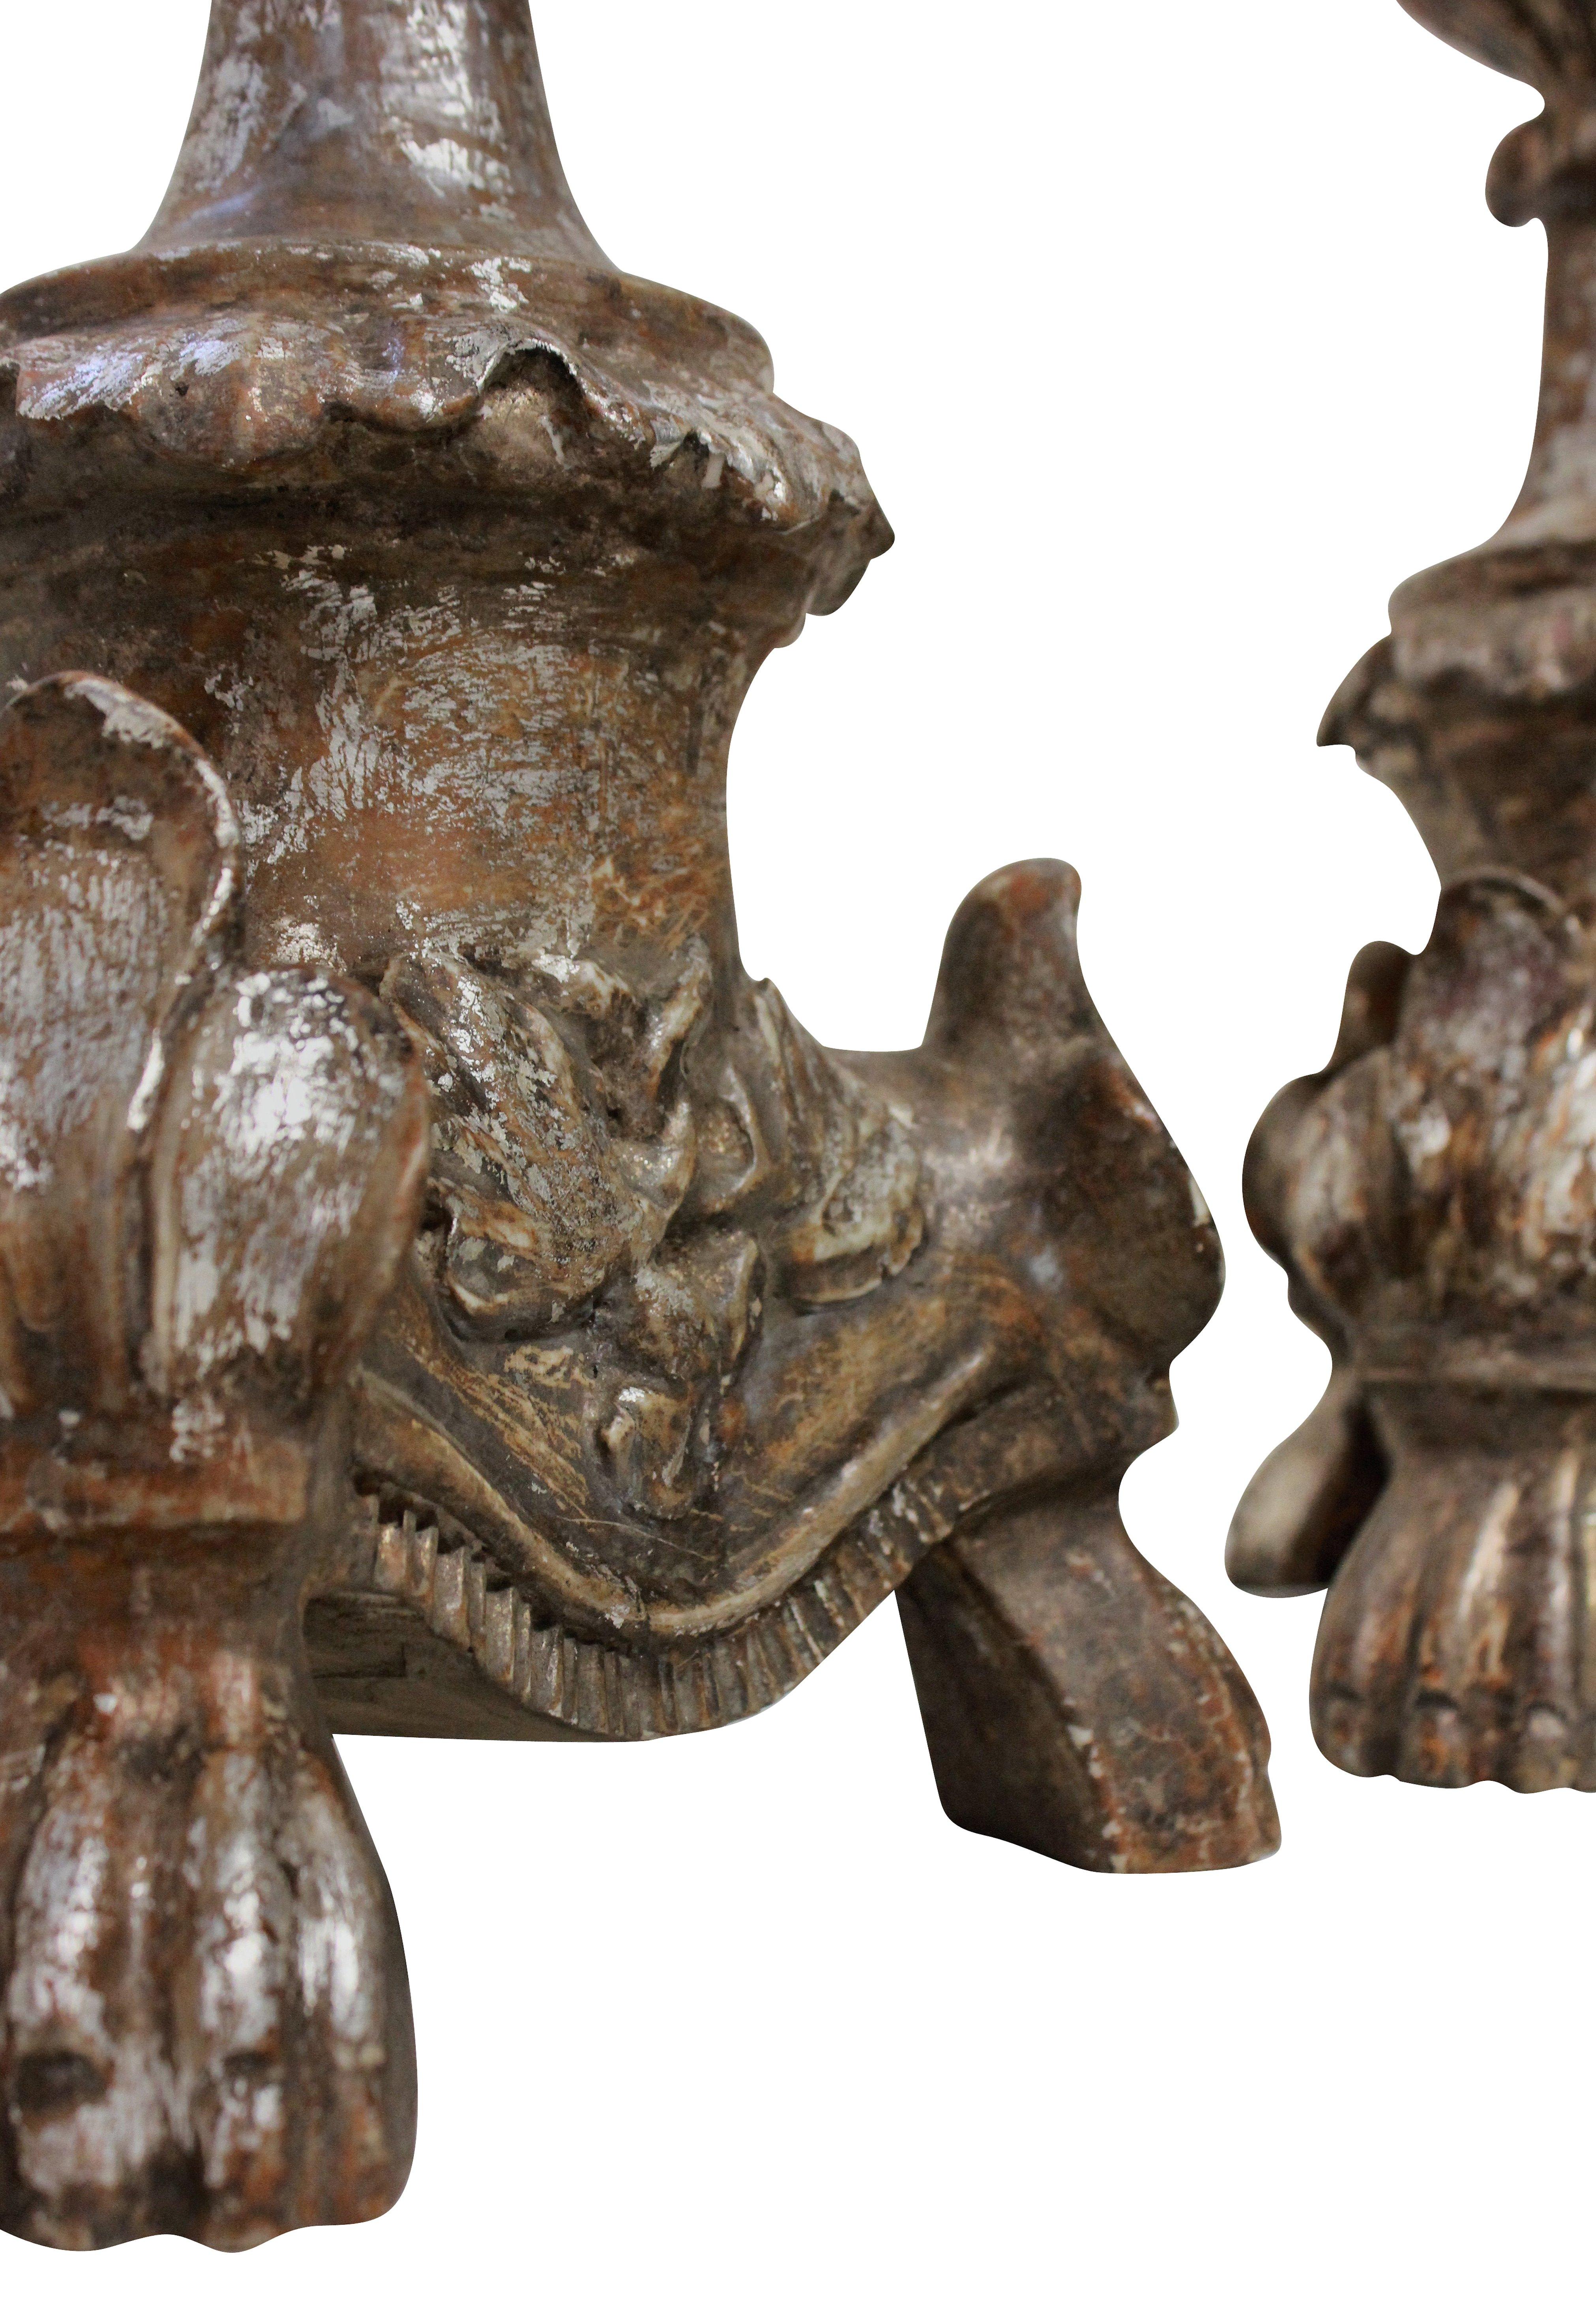 Une paire de chandeliers italiens du 18ème siècle, sculptés et en feuilles d'argent comme lampes.
 